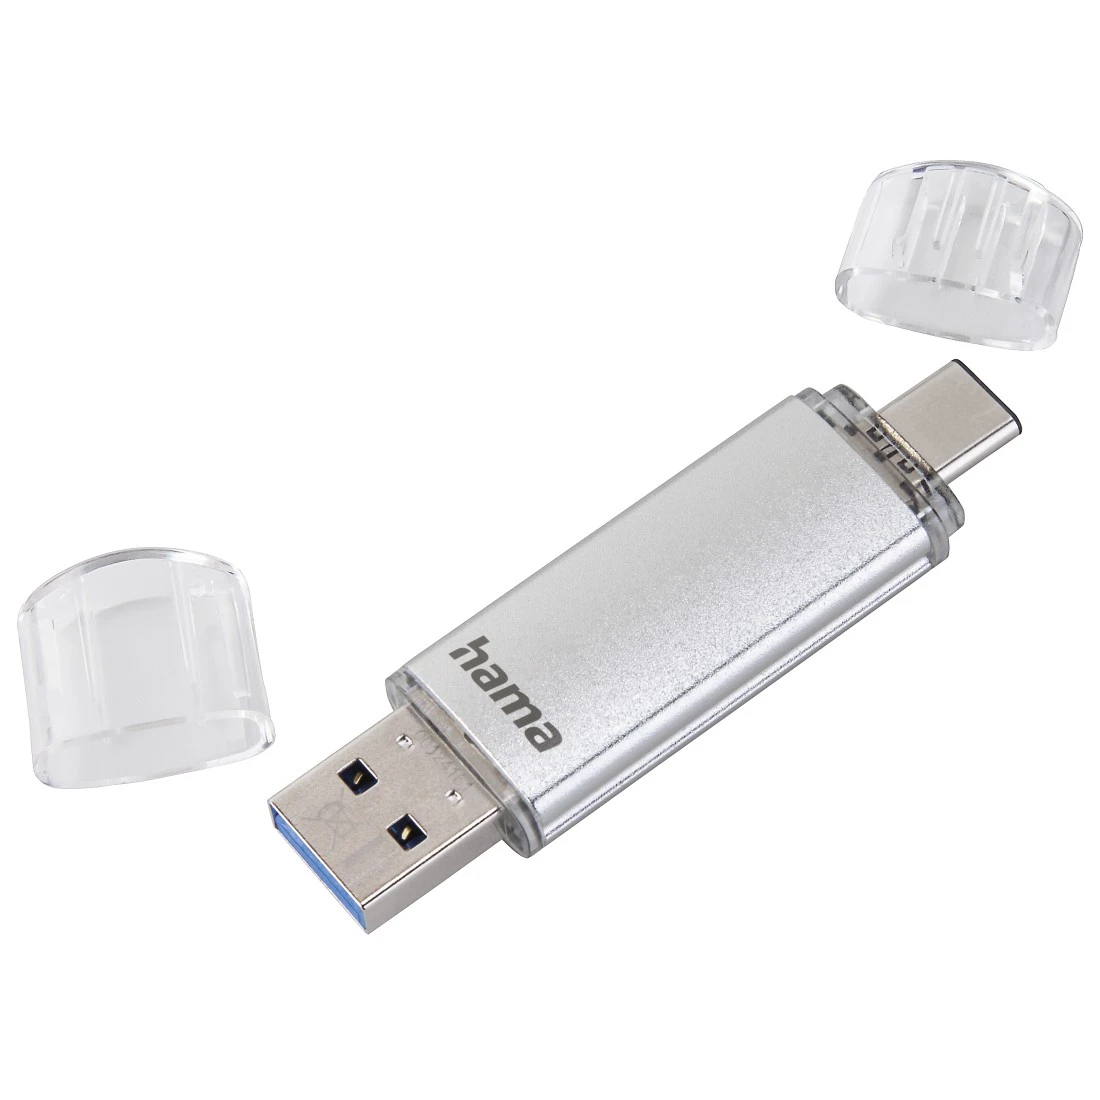 Clé USB C-Laeta, USB-C USB 3.1/USB 3.0, 256 Go, 70 Mo/s, argentée